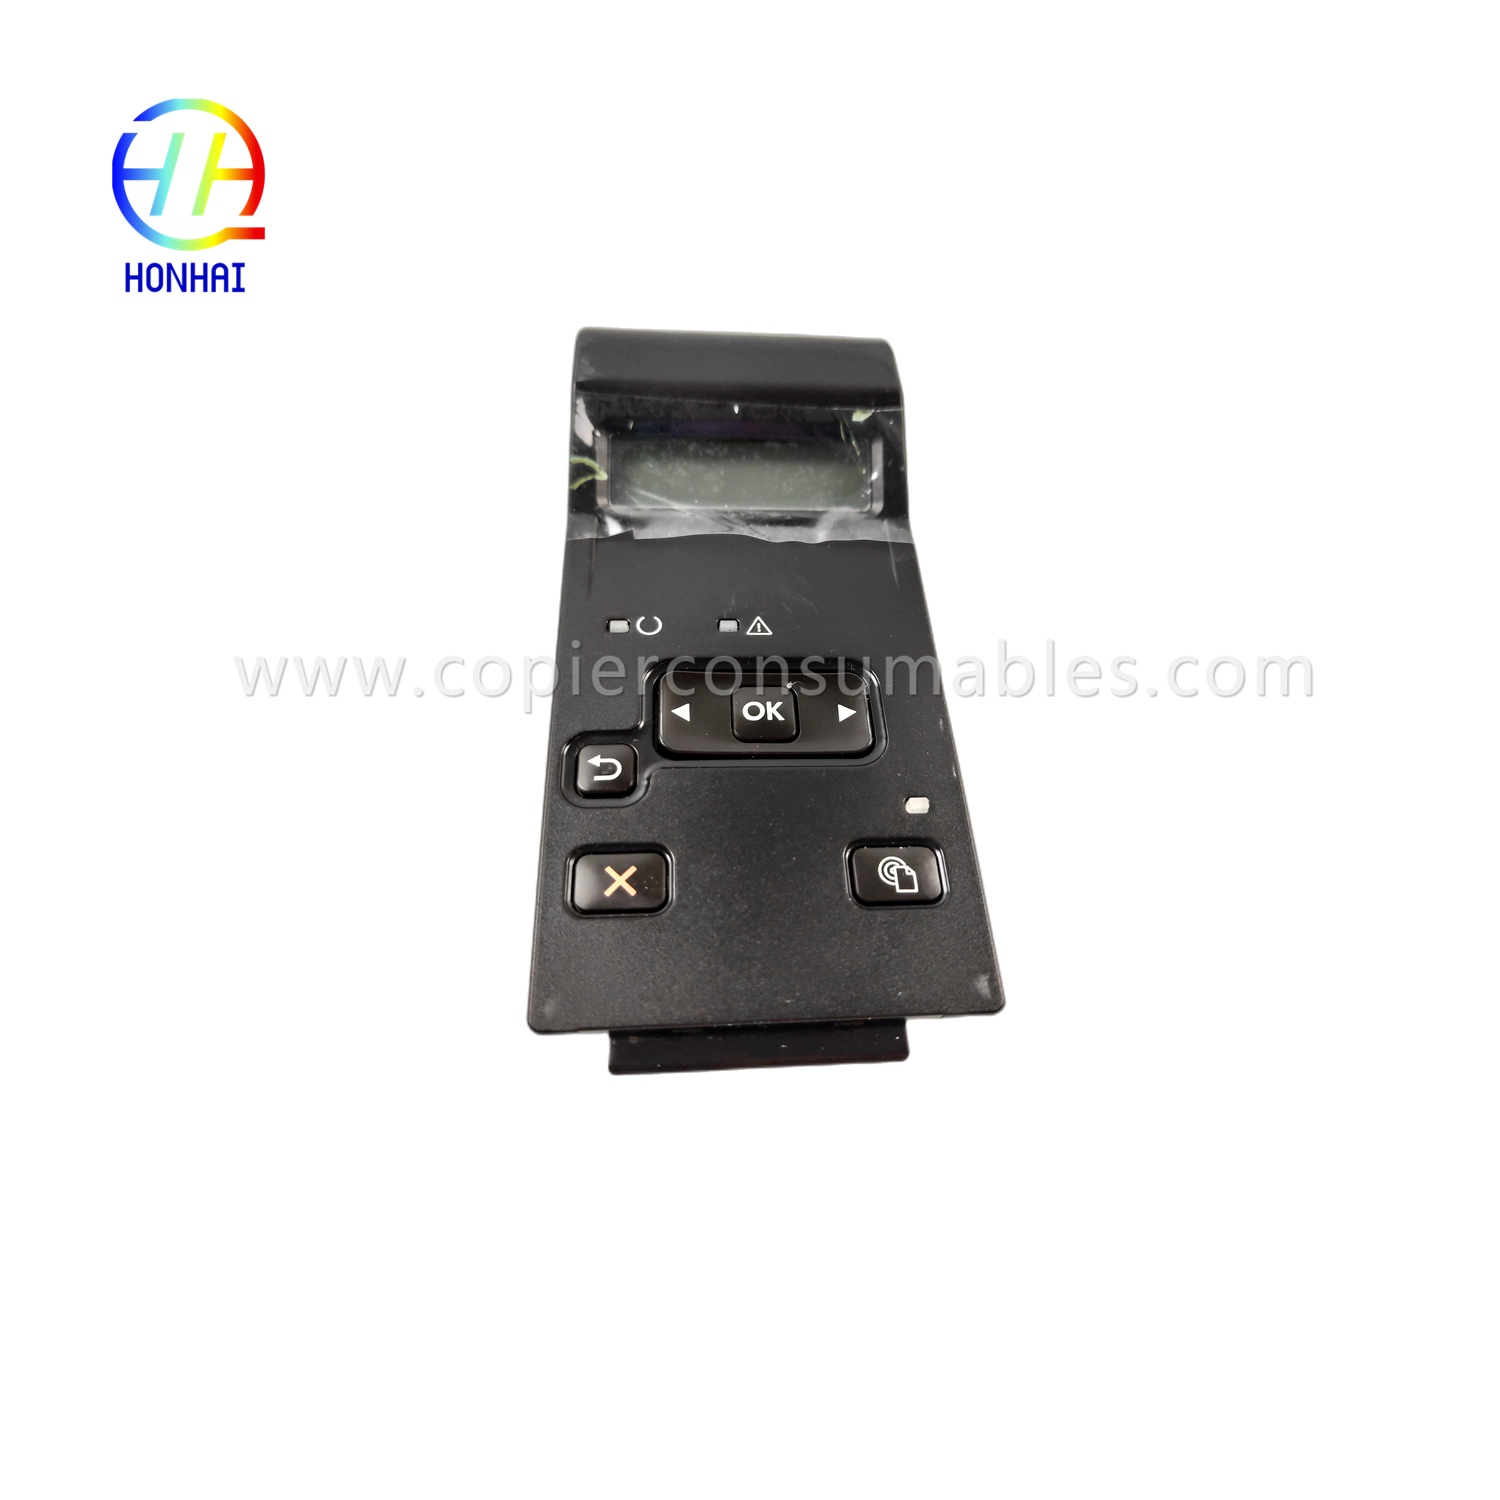 Bedieningspaneel touchscreen voor HP LaserJet 400 M401d M401dn M401n M401 m401 401d 401dn 401n (1)